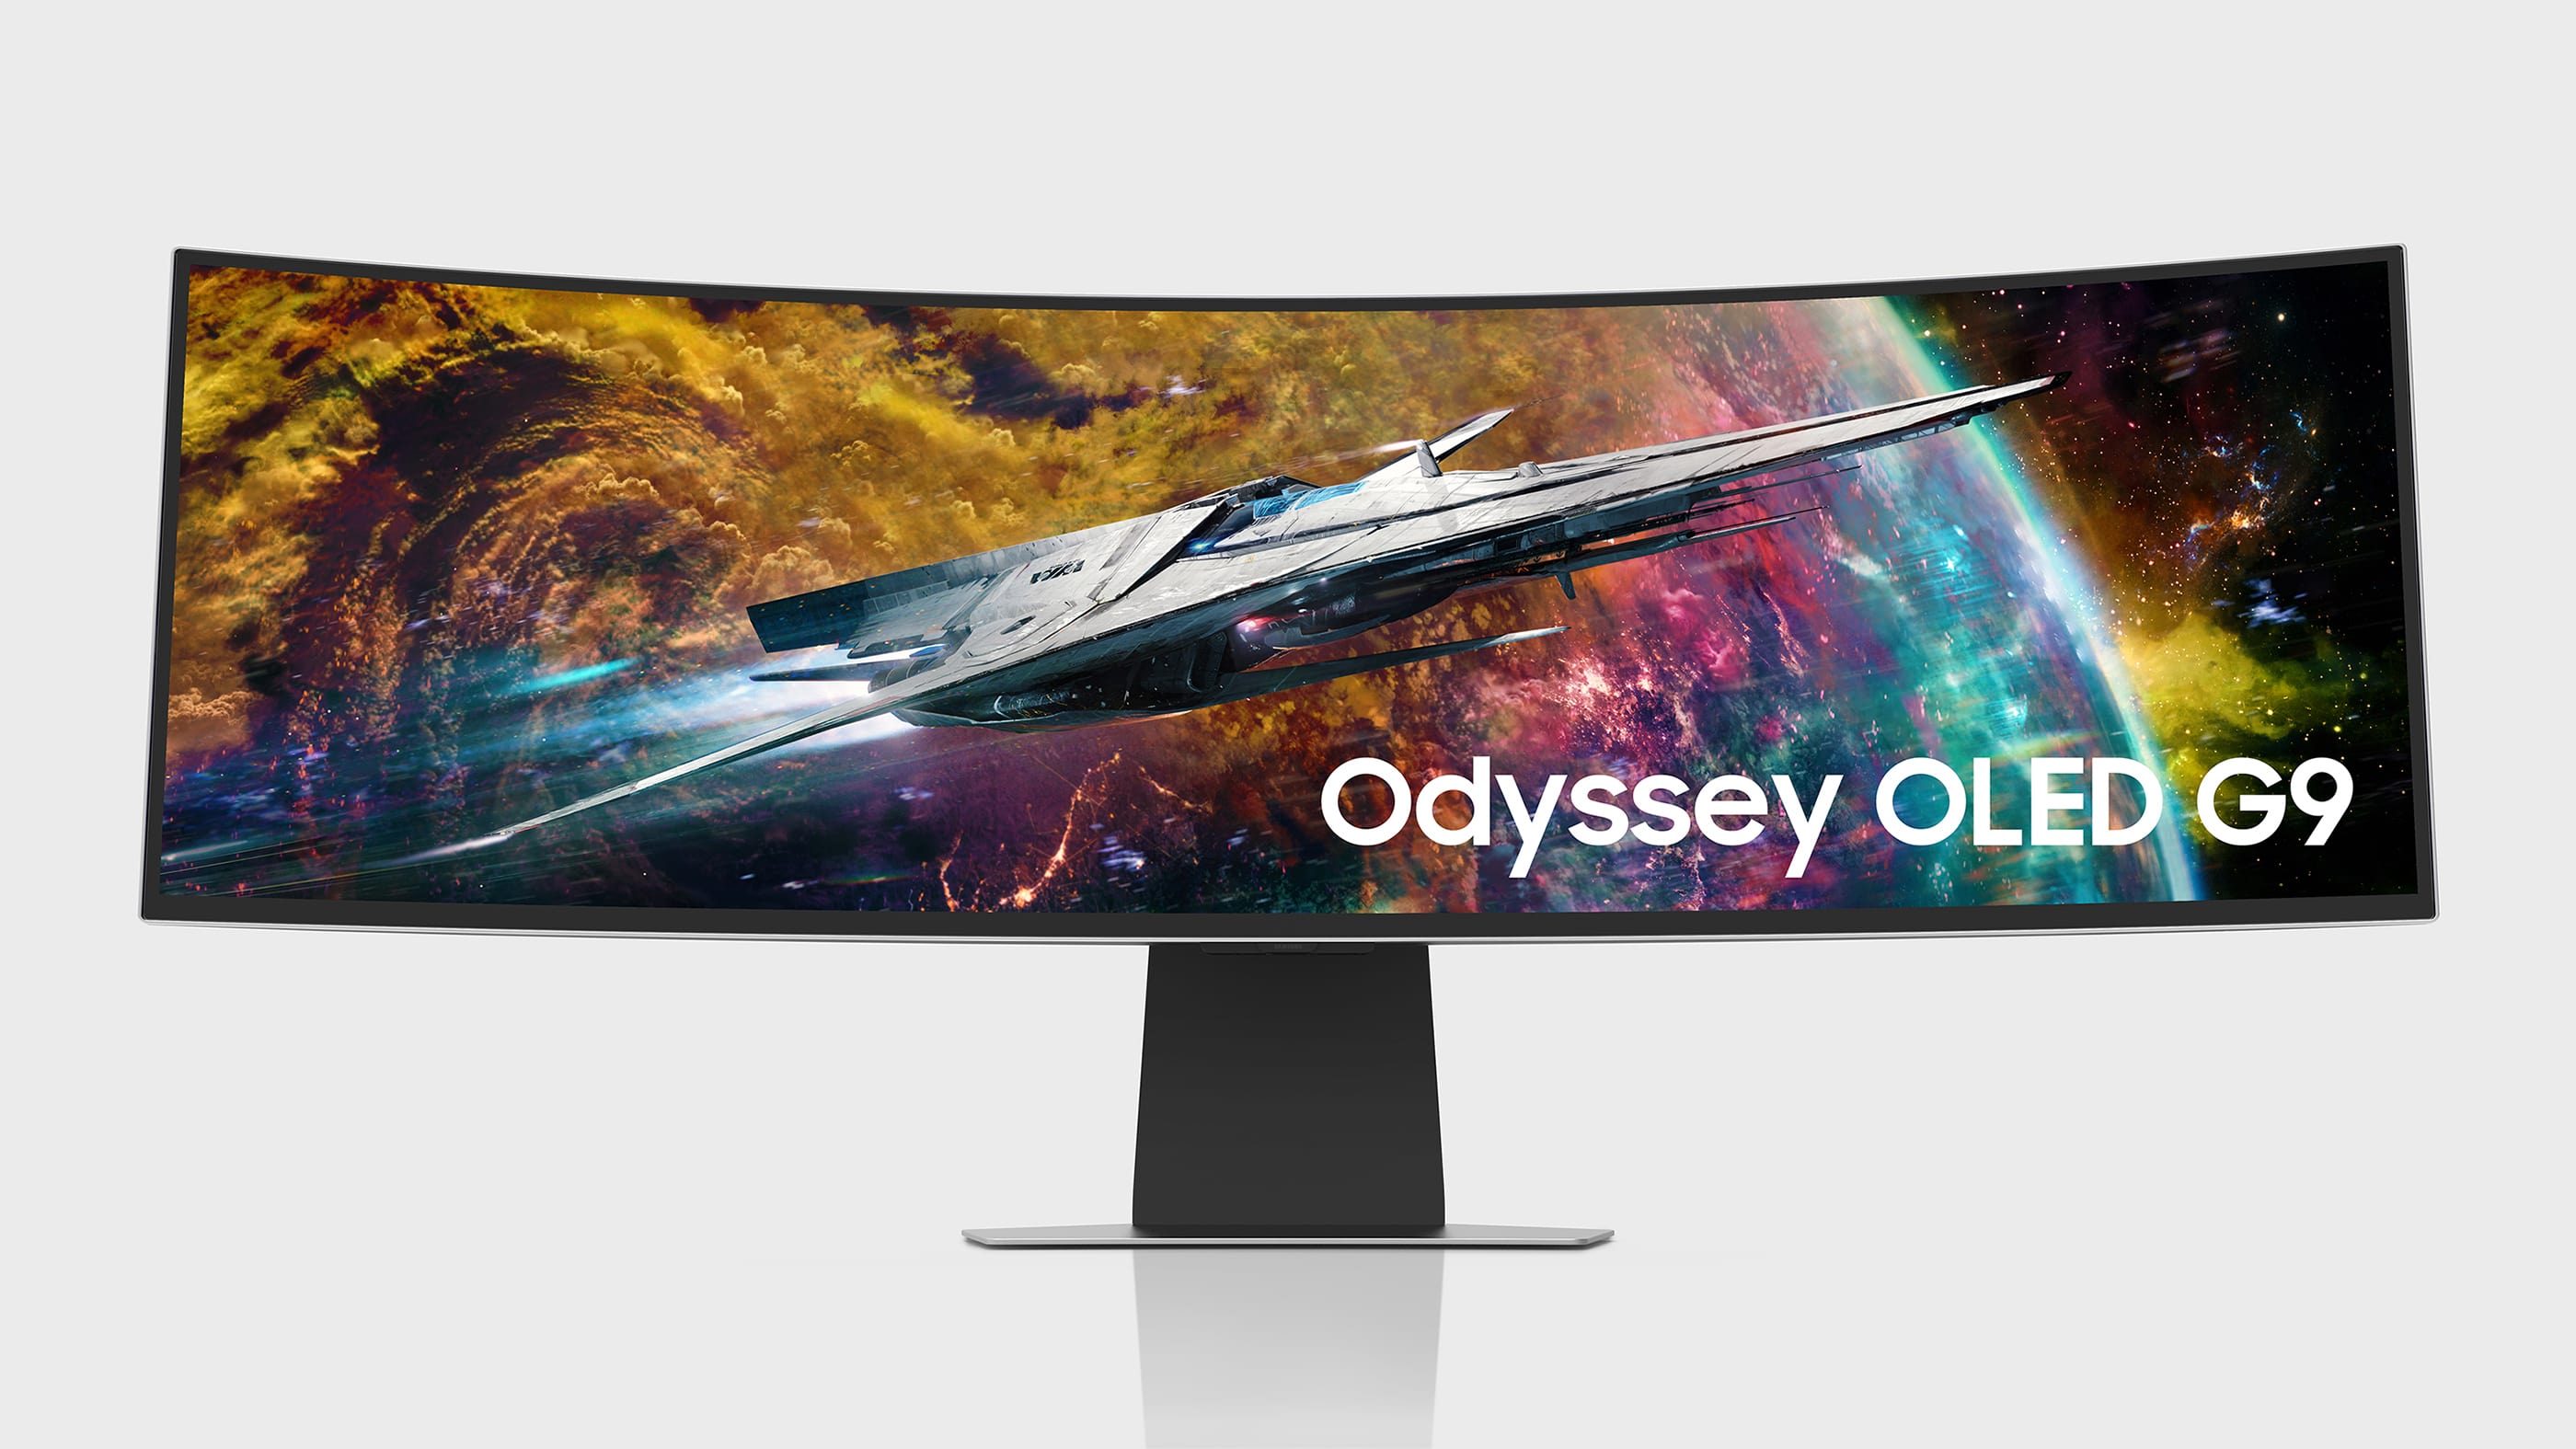 Samsung Electronics amplía su gama de monitores Odyssey para